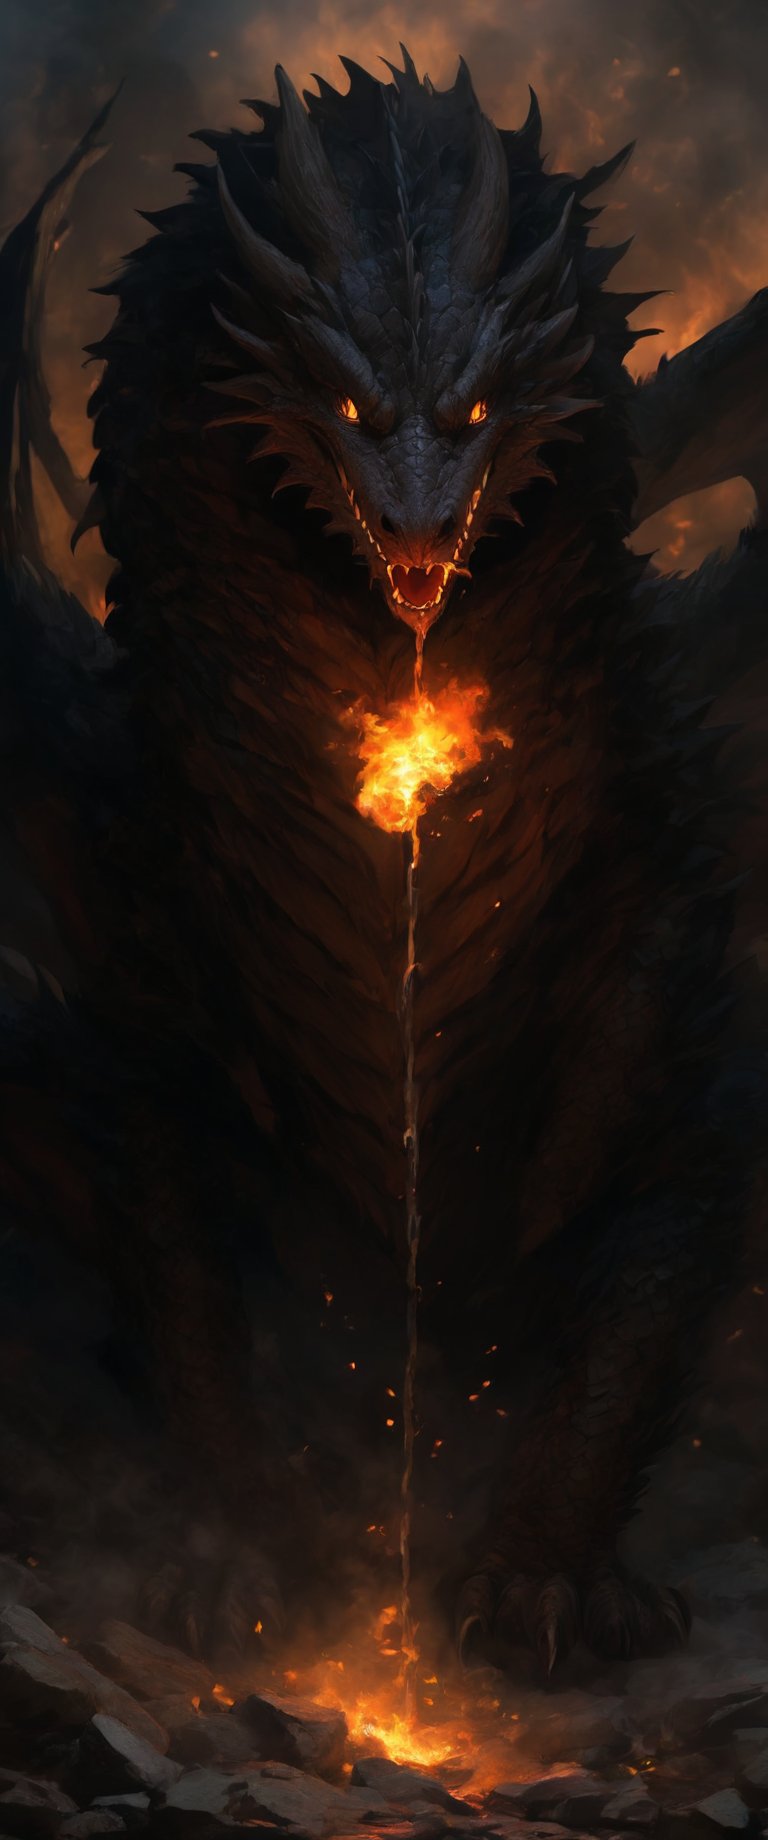 Deception of a medival  dragon slayer. dark, raw